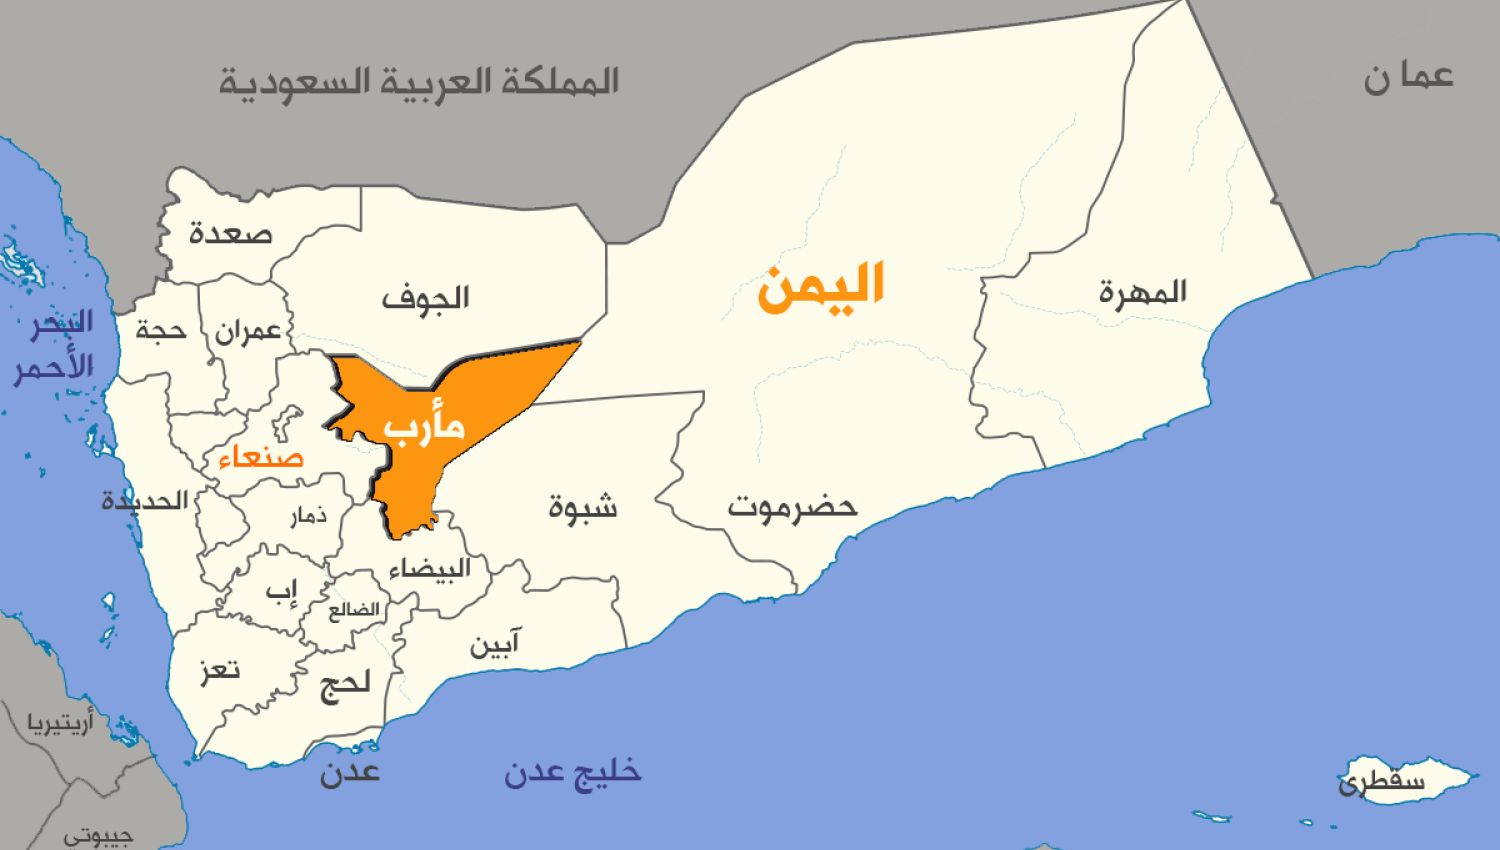  الحسم في مأرب...شمال اليمن تحت سيطرة قوات صنعاء